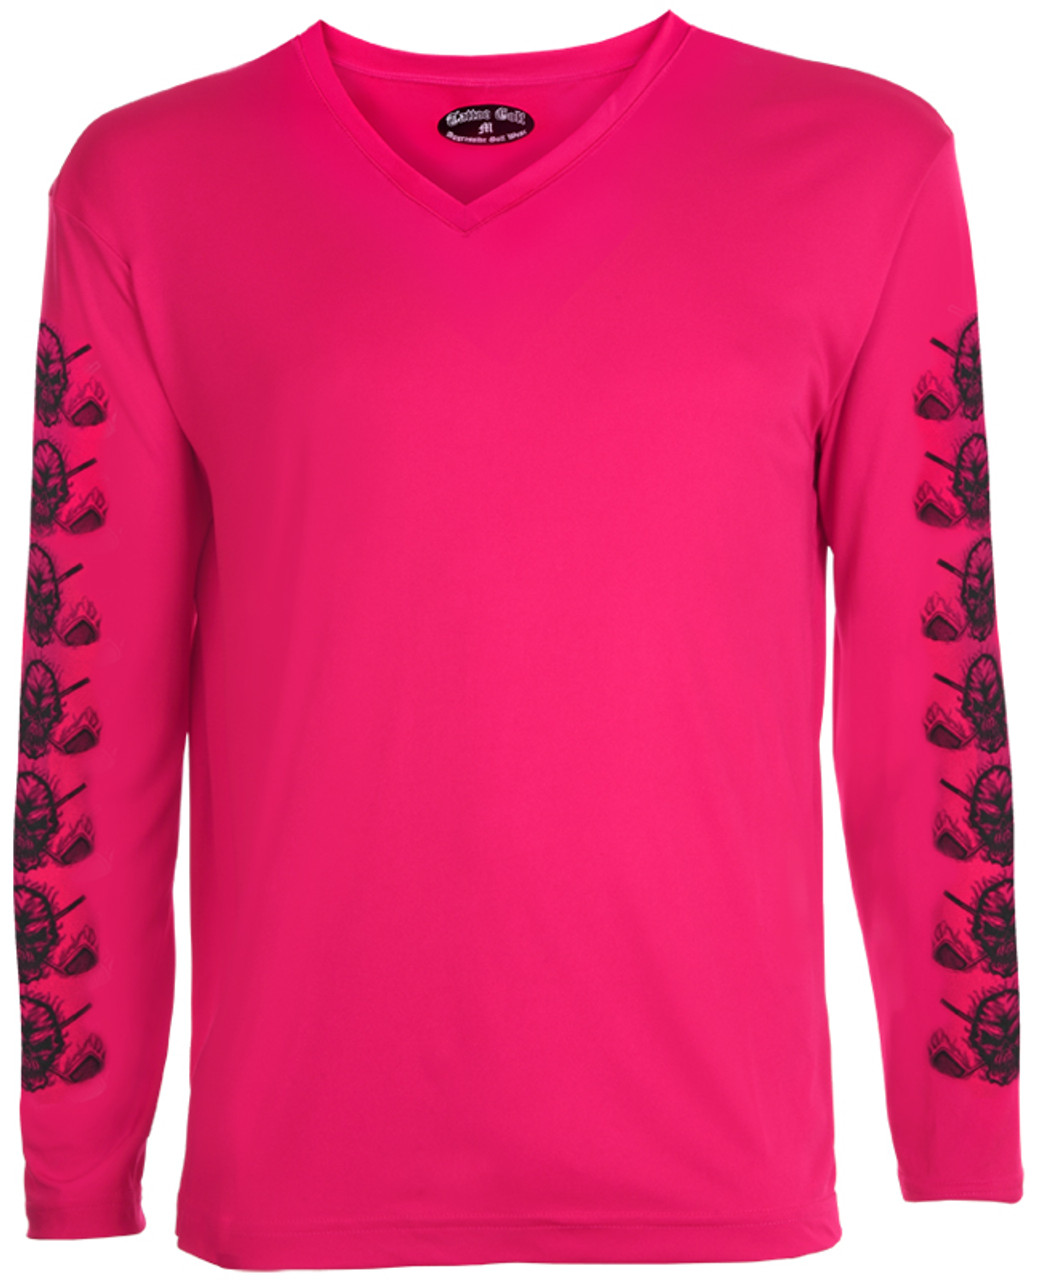 Women's Golf Undershirt Long Sleeve (Pink)